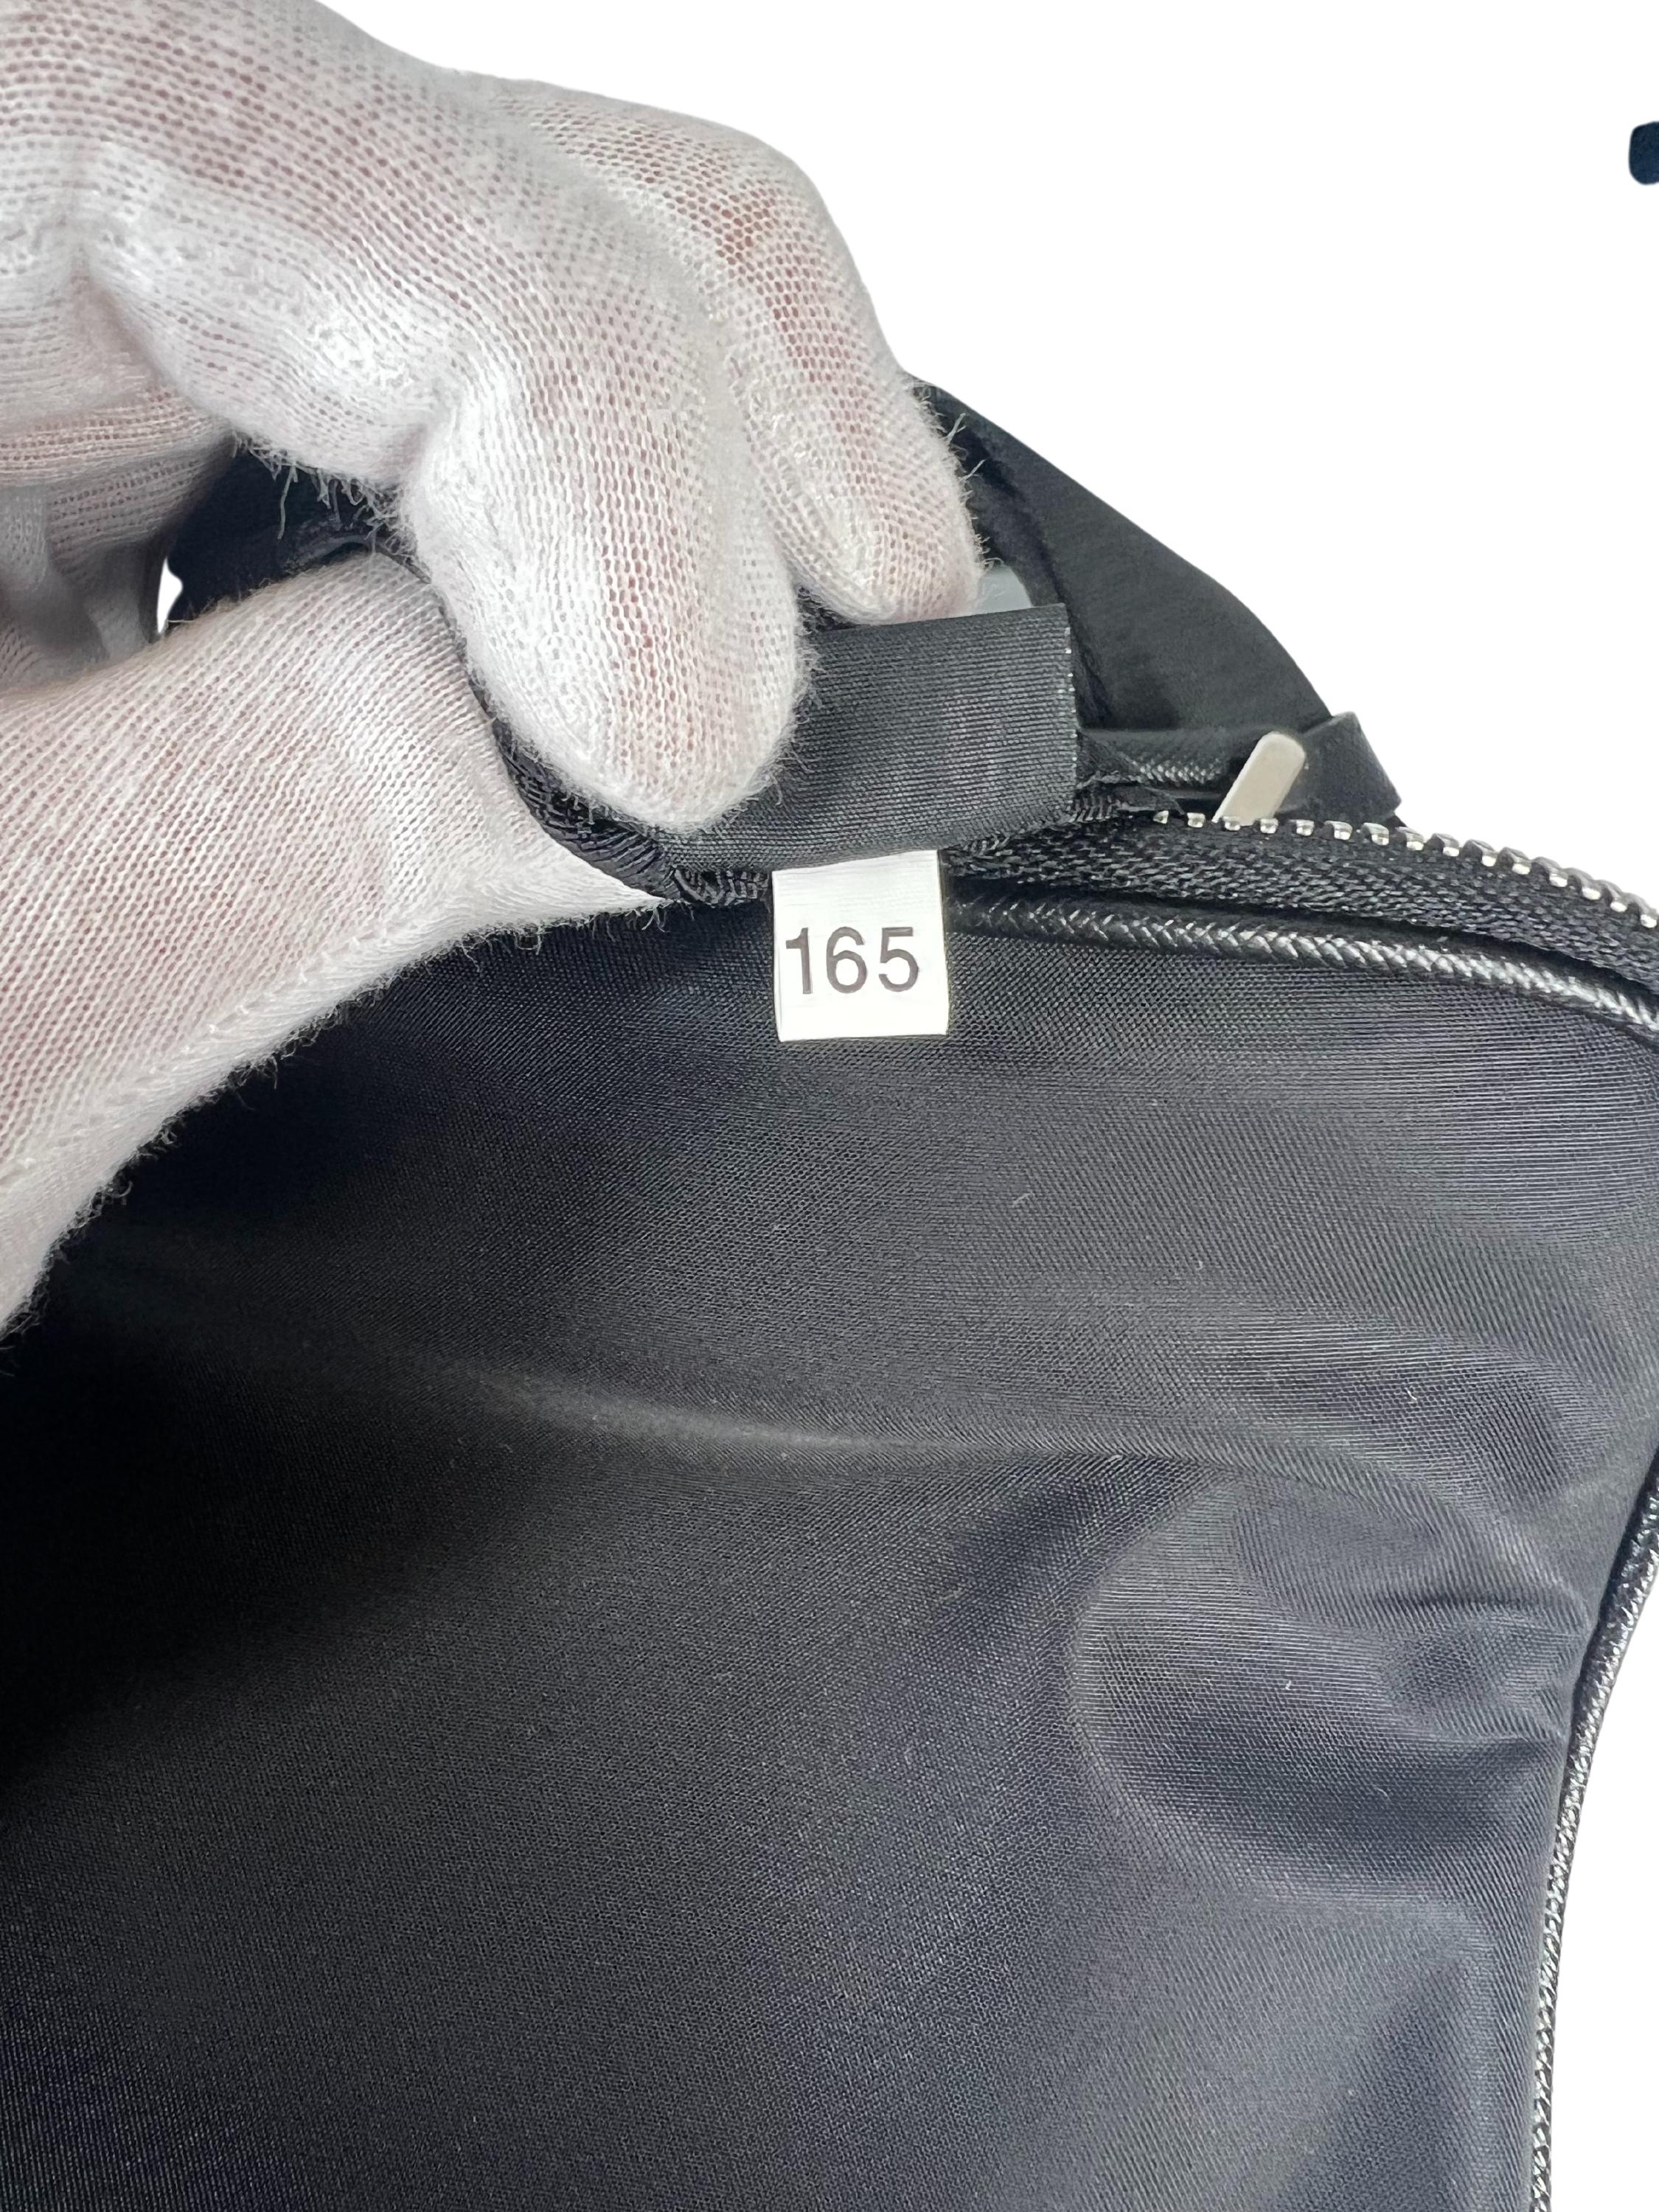 Prada Saffiano Trimmed Tessuto Brique Crossbody Bag For Sale 1